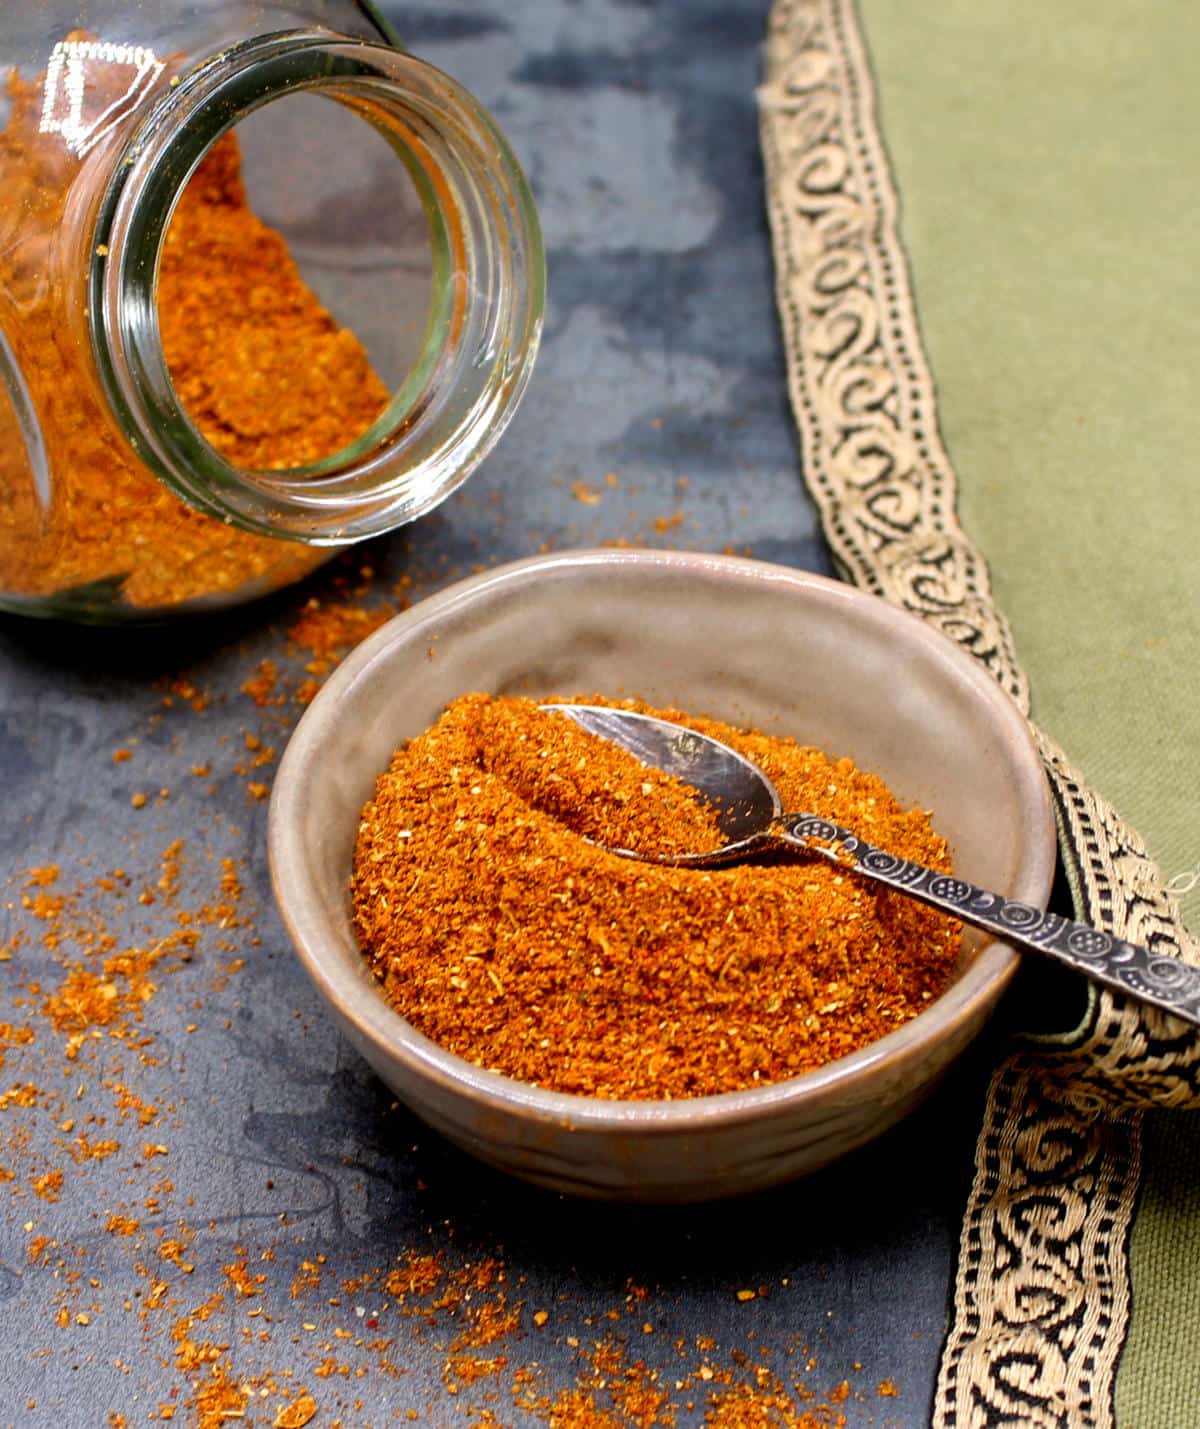 Marockansk ras el hanout kryddblandning i skål med sked och i glasbehållare.